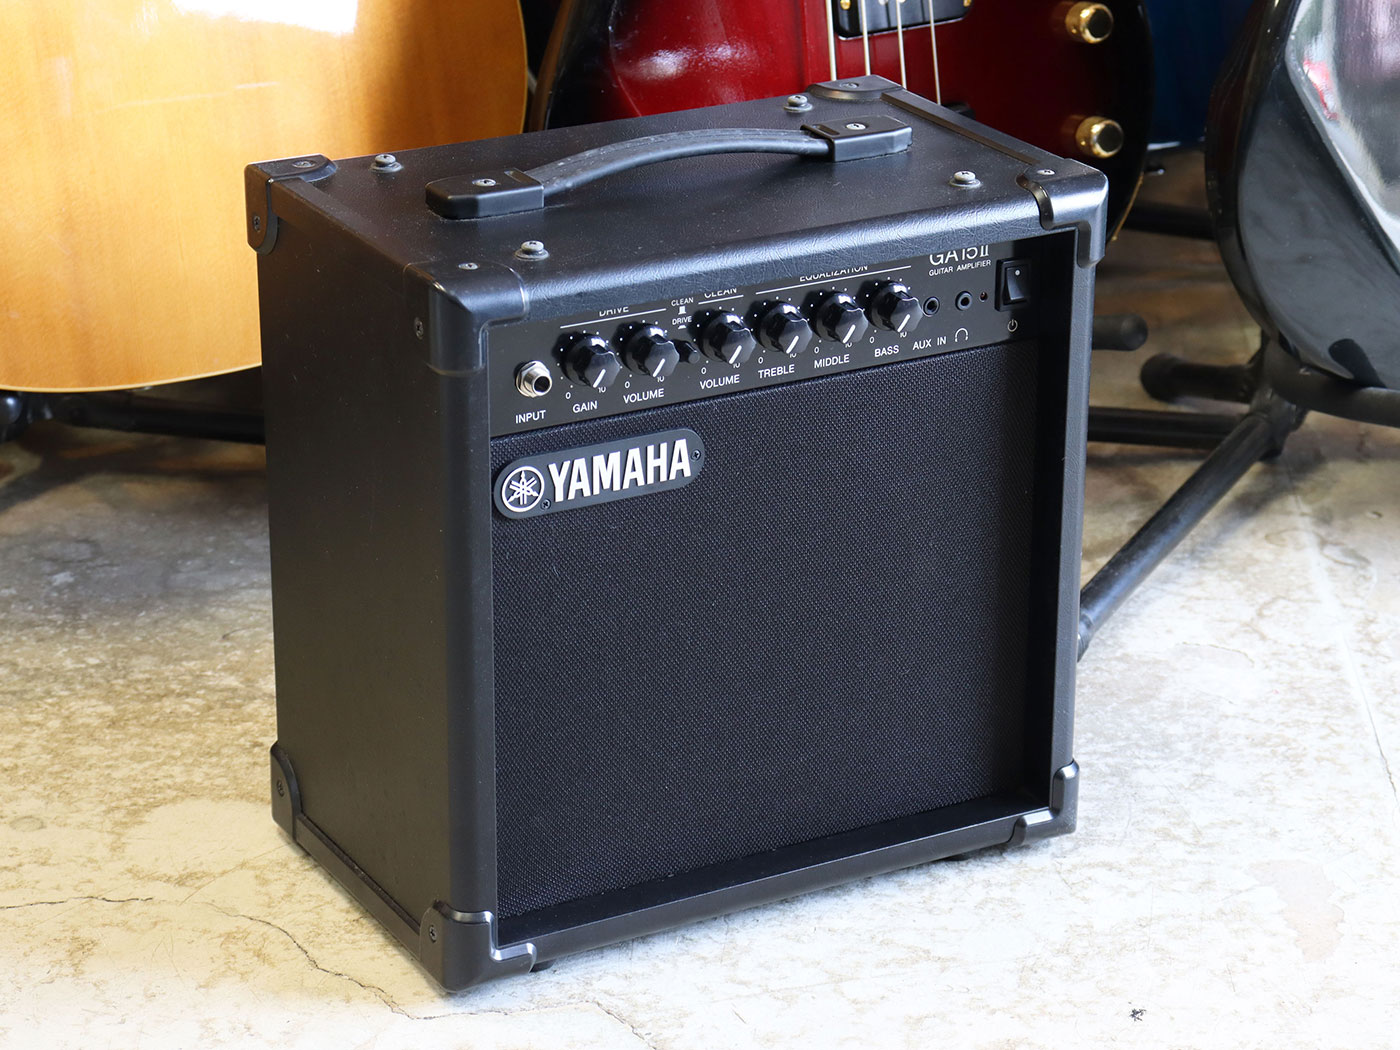 YAMAHA GA15 II ギター ベース アンプ楽器 - ギターアンプ